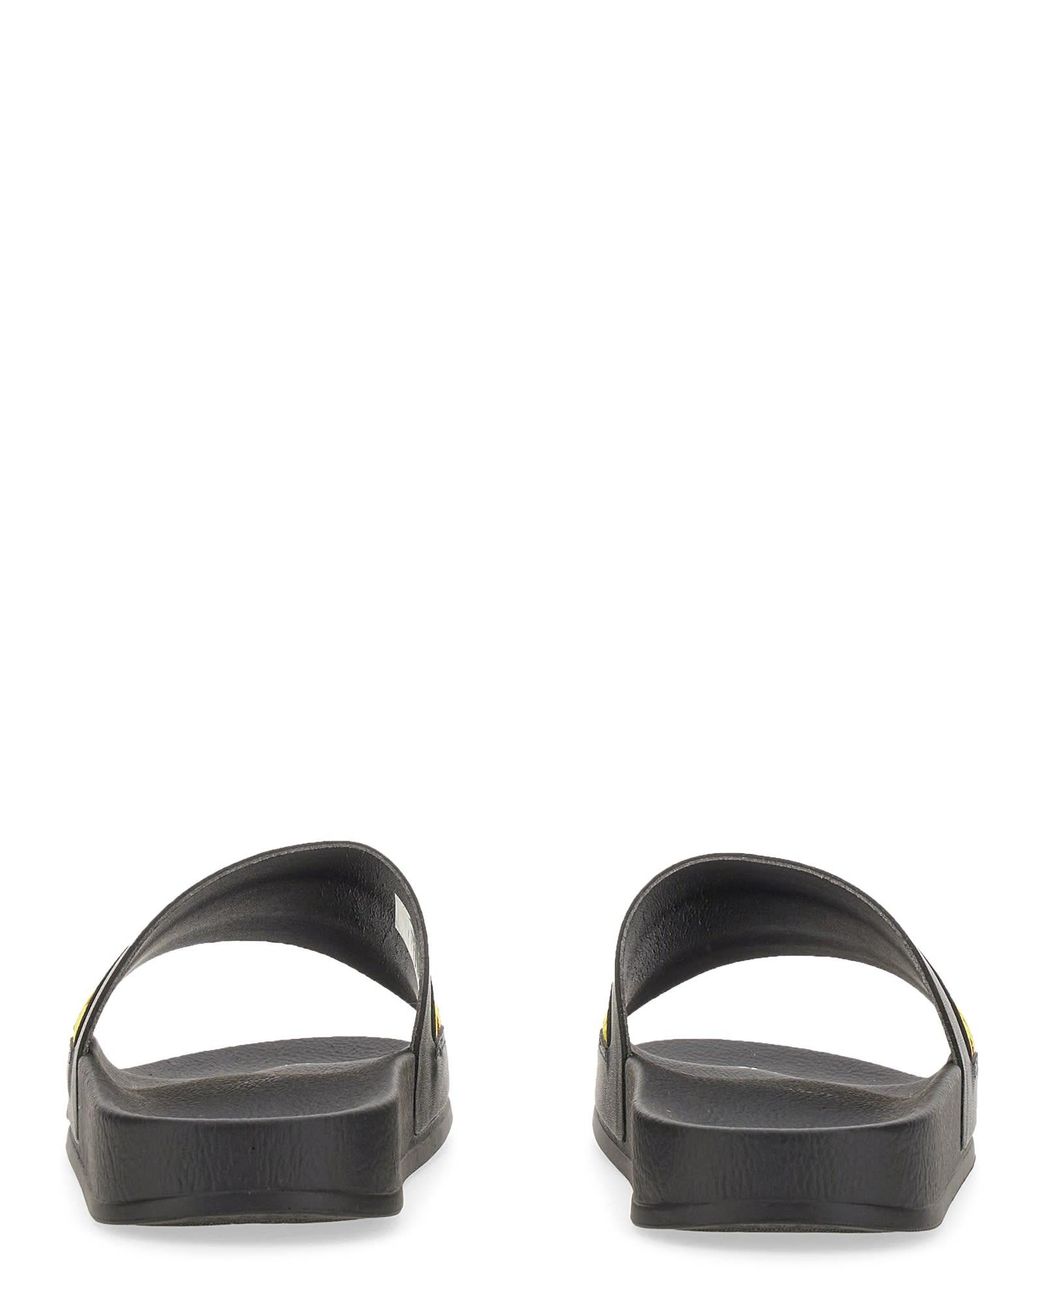 Off-White c/o Virgil Abloh Meteor Rubber Slide in Nero for Men Save 54% slides and flip flops Black Mens Shoes Sandals 